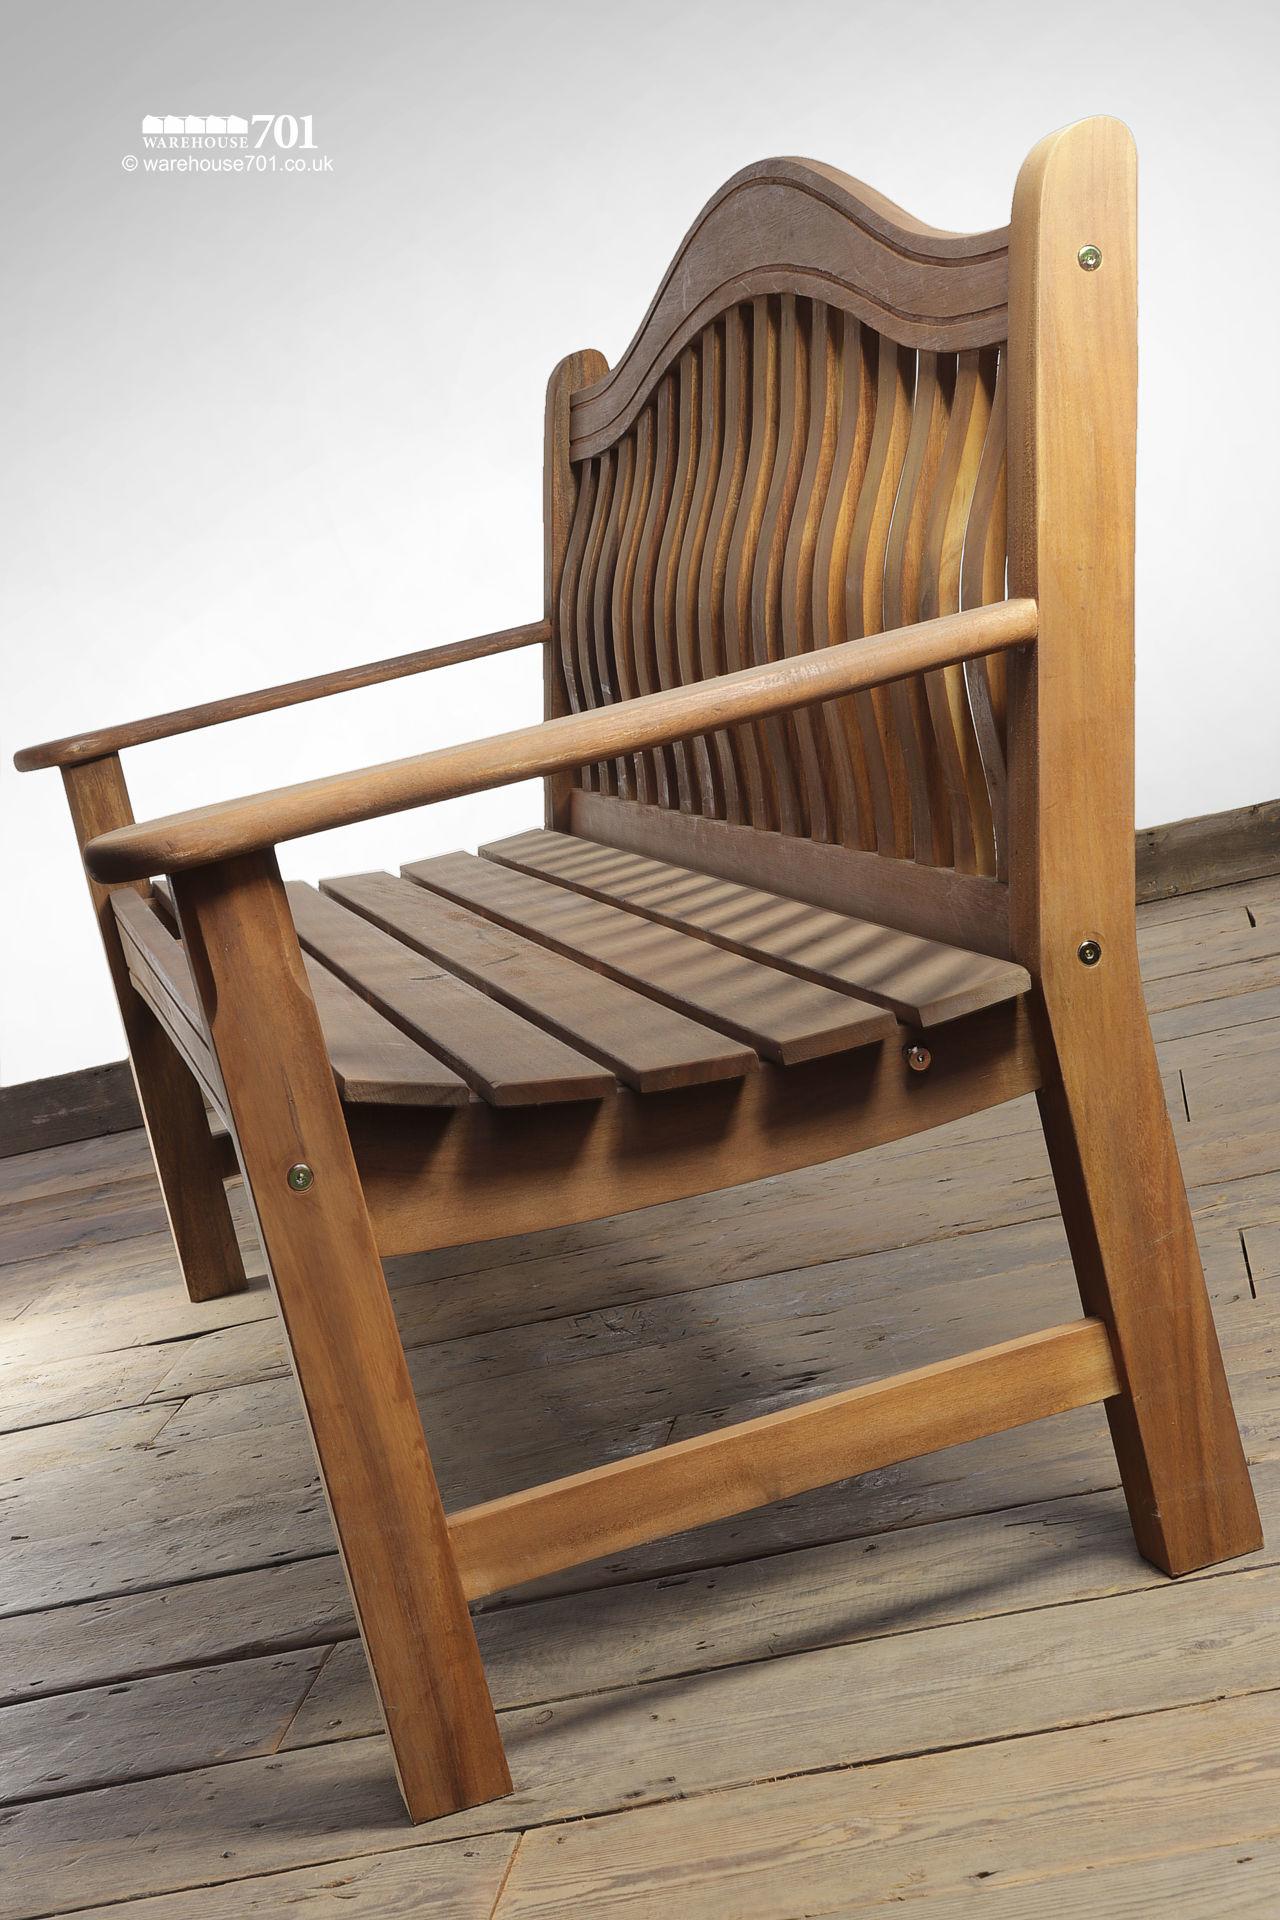 New Three Seater Norbury Wooden Garden Bench #1